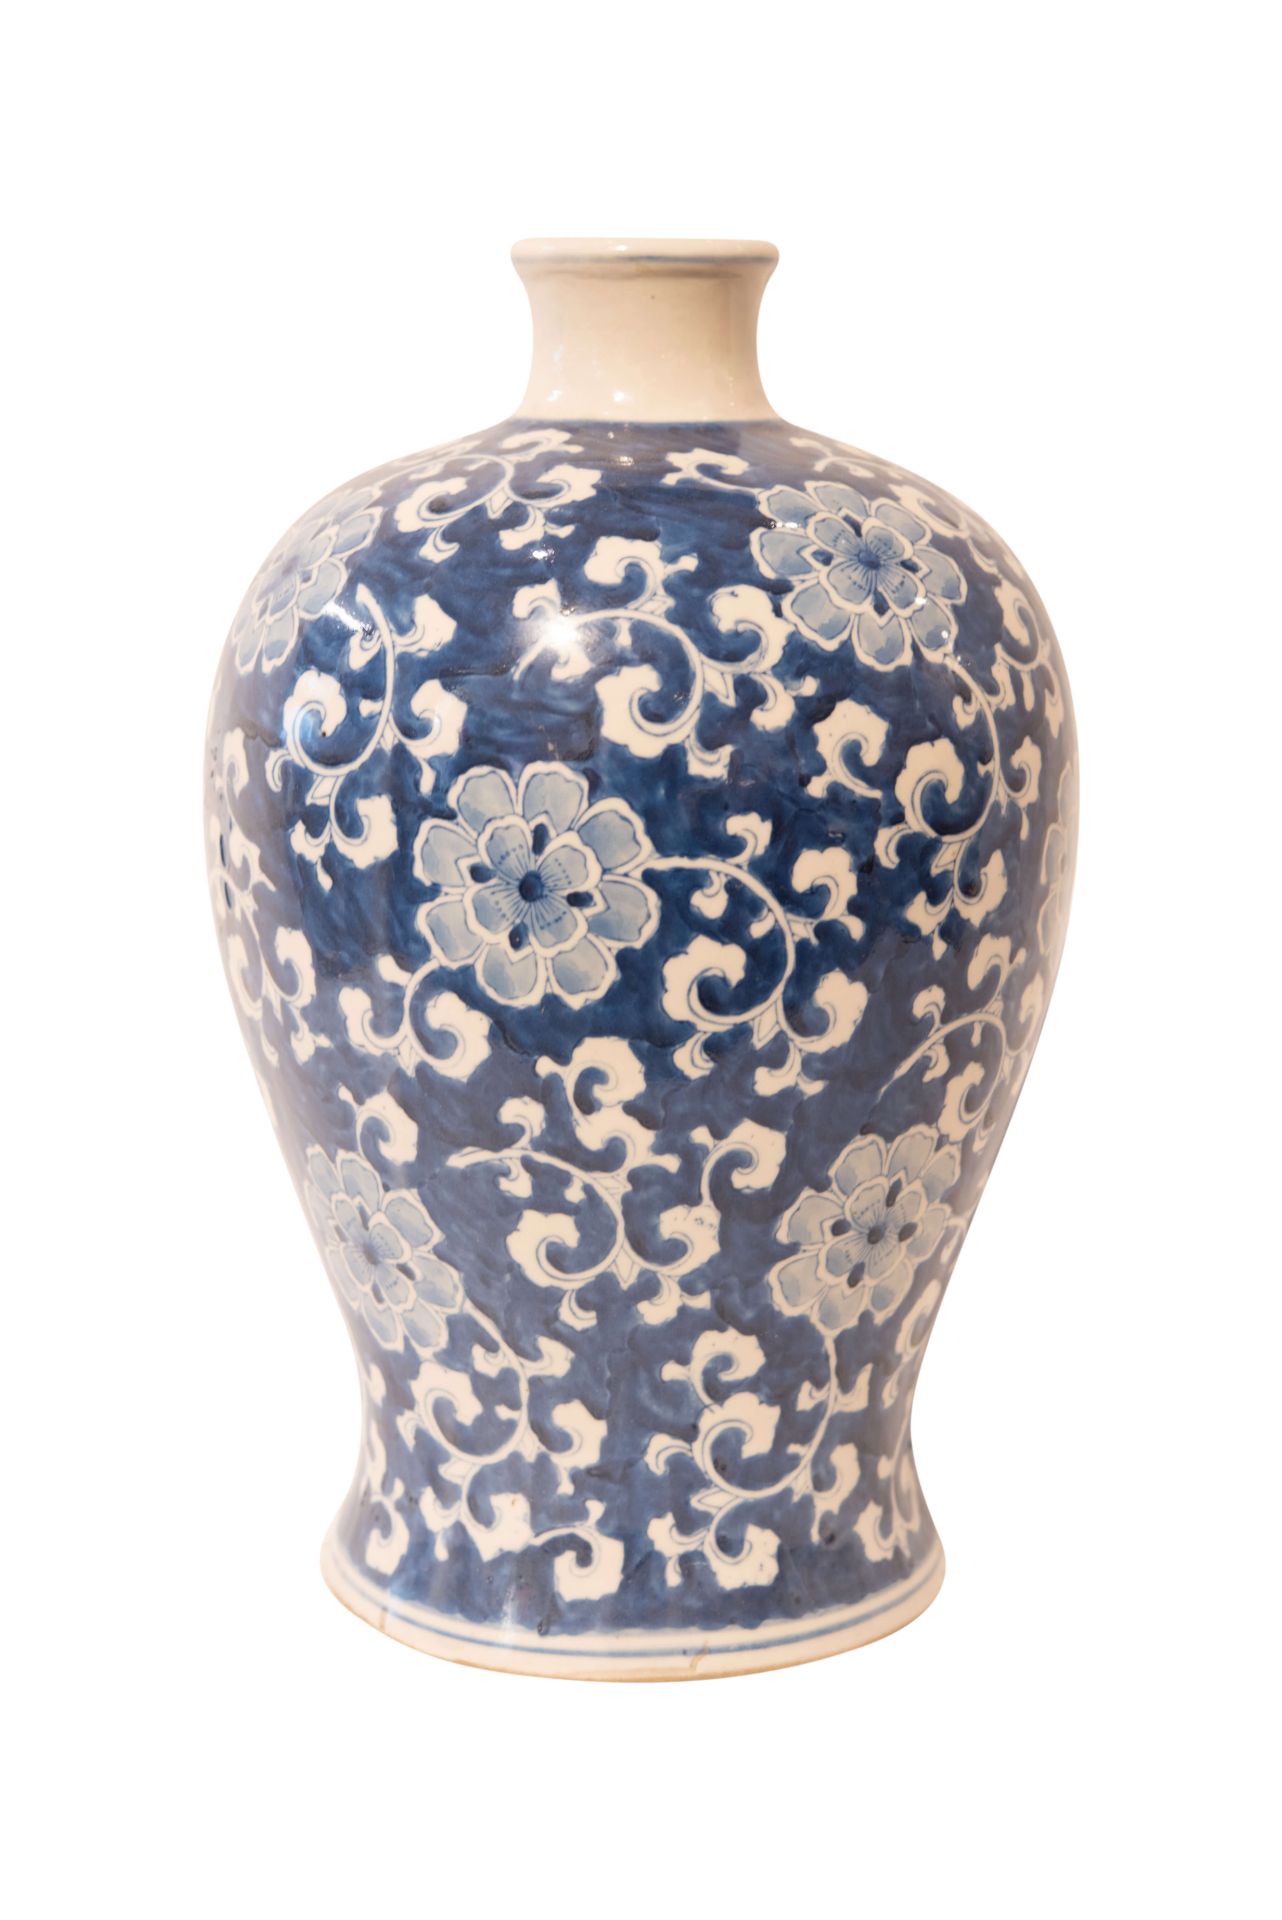 Chinesische Vase Blumenmotive gemarkt | Chinese Vase With Floral Pattern